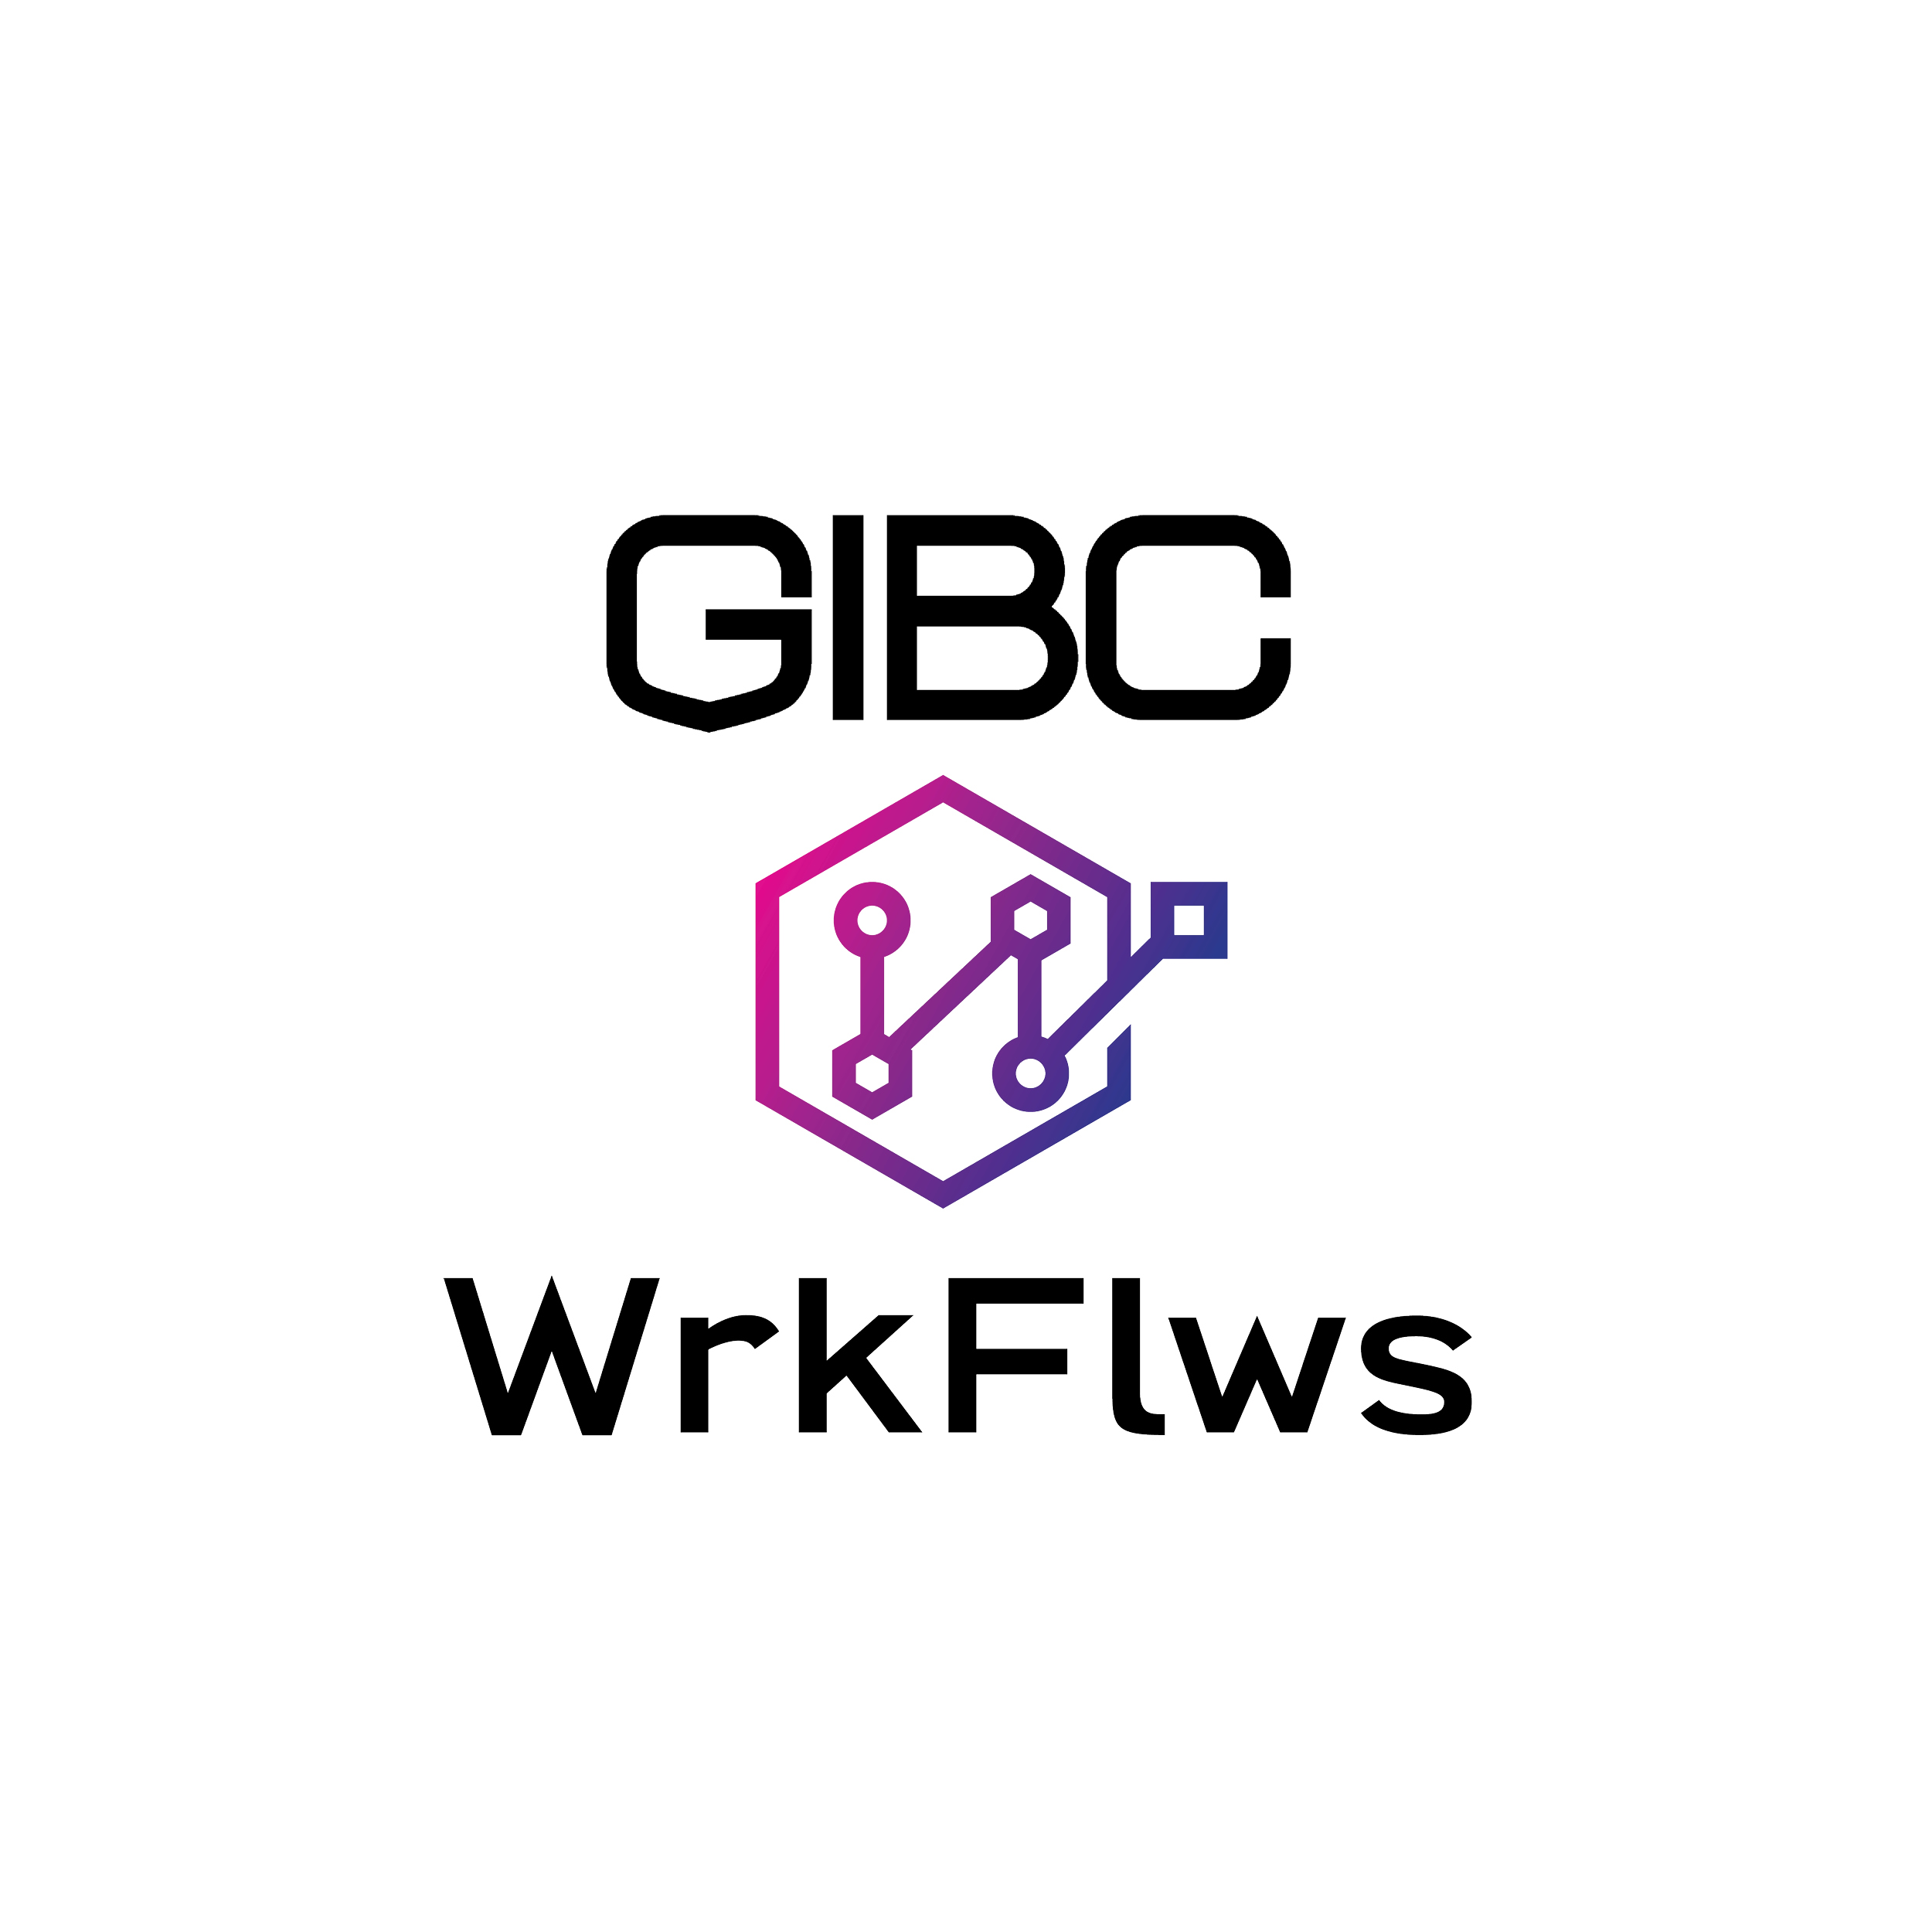 GIBC WrkFlws